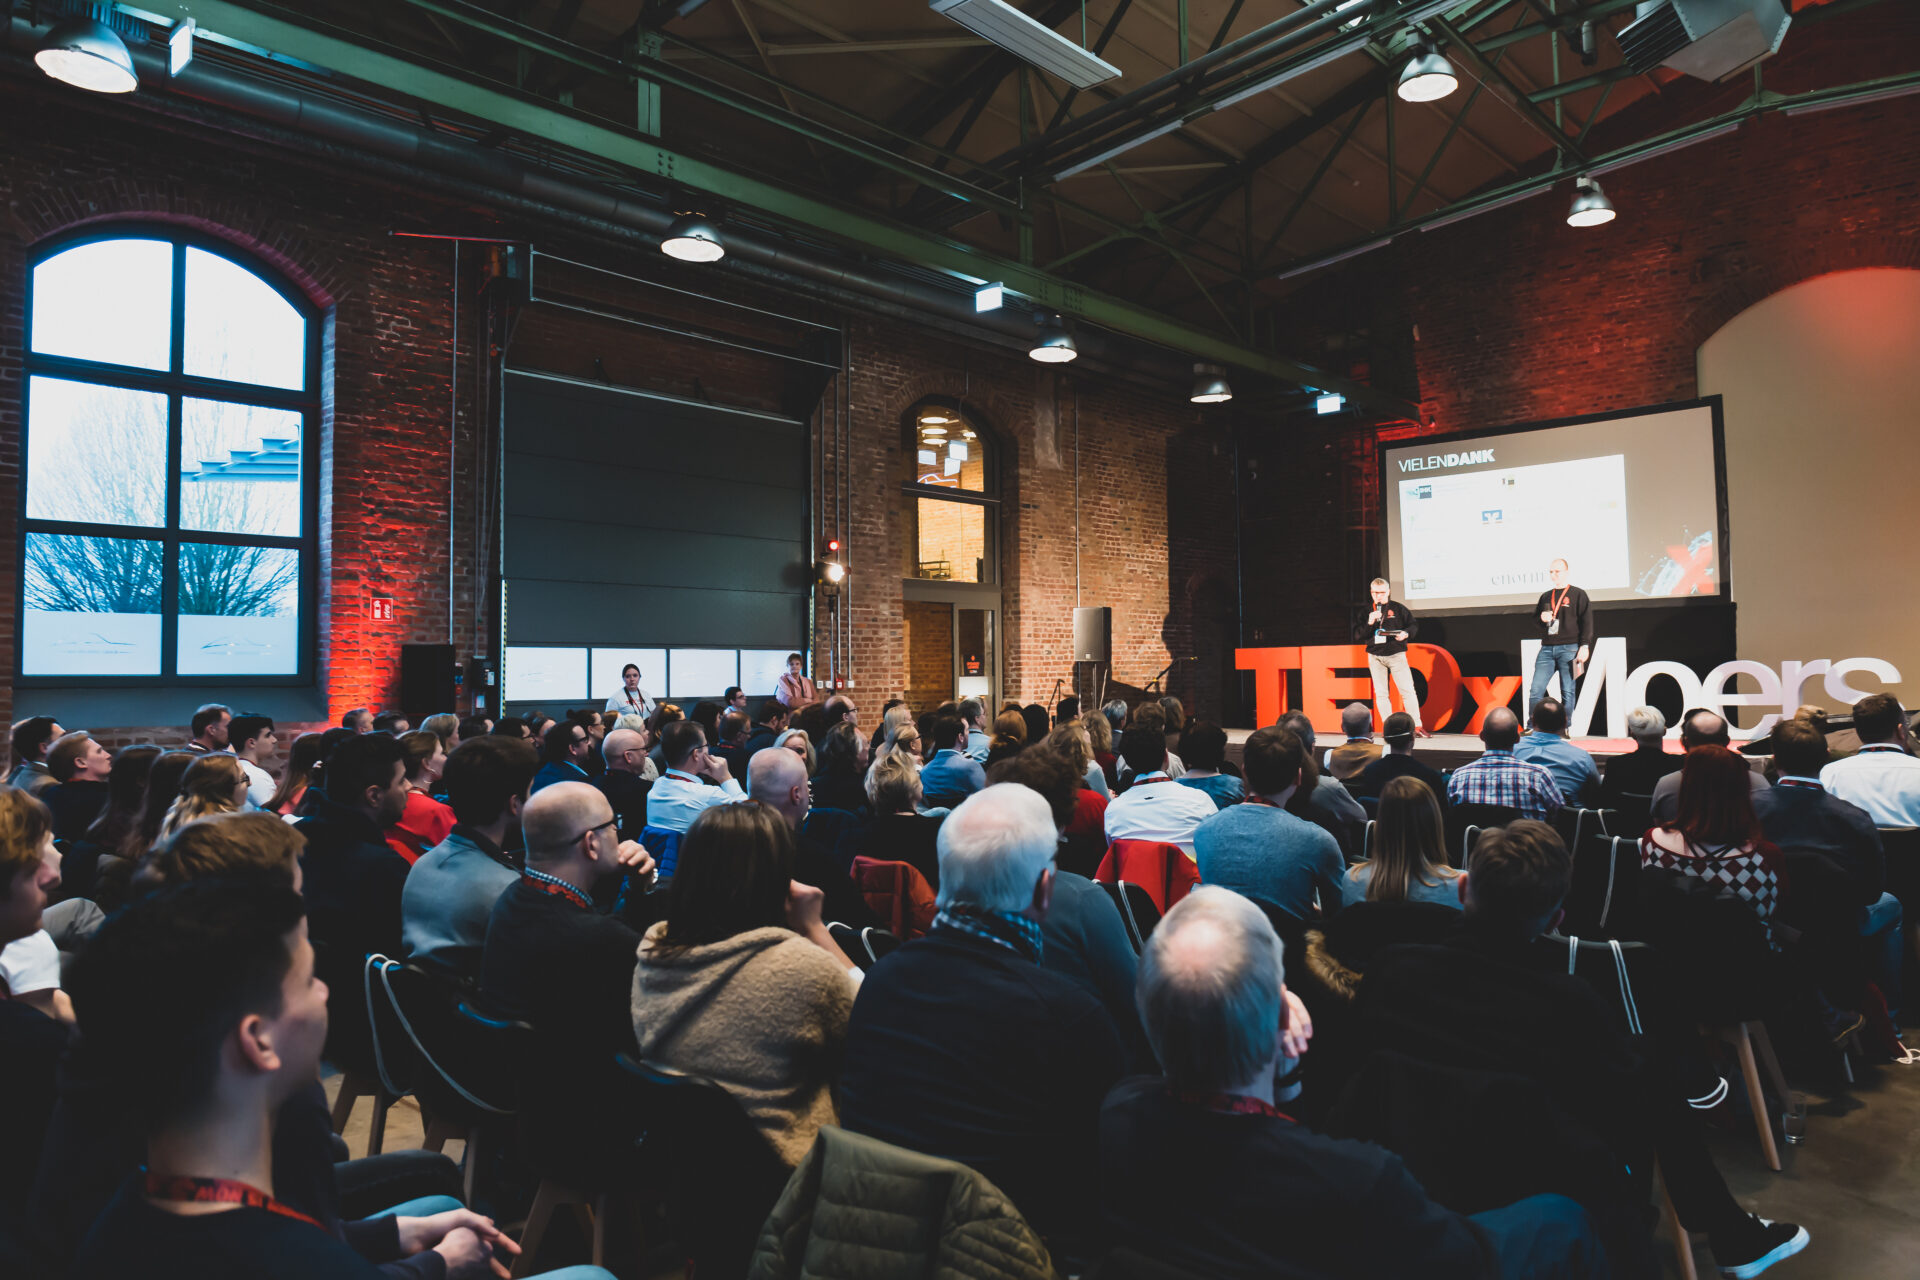 Wir verschieben TEDxMoers auf 2022